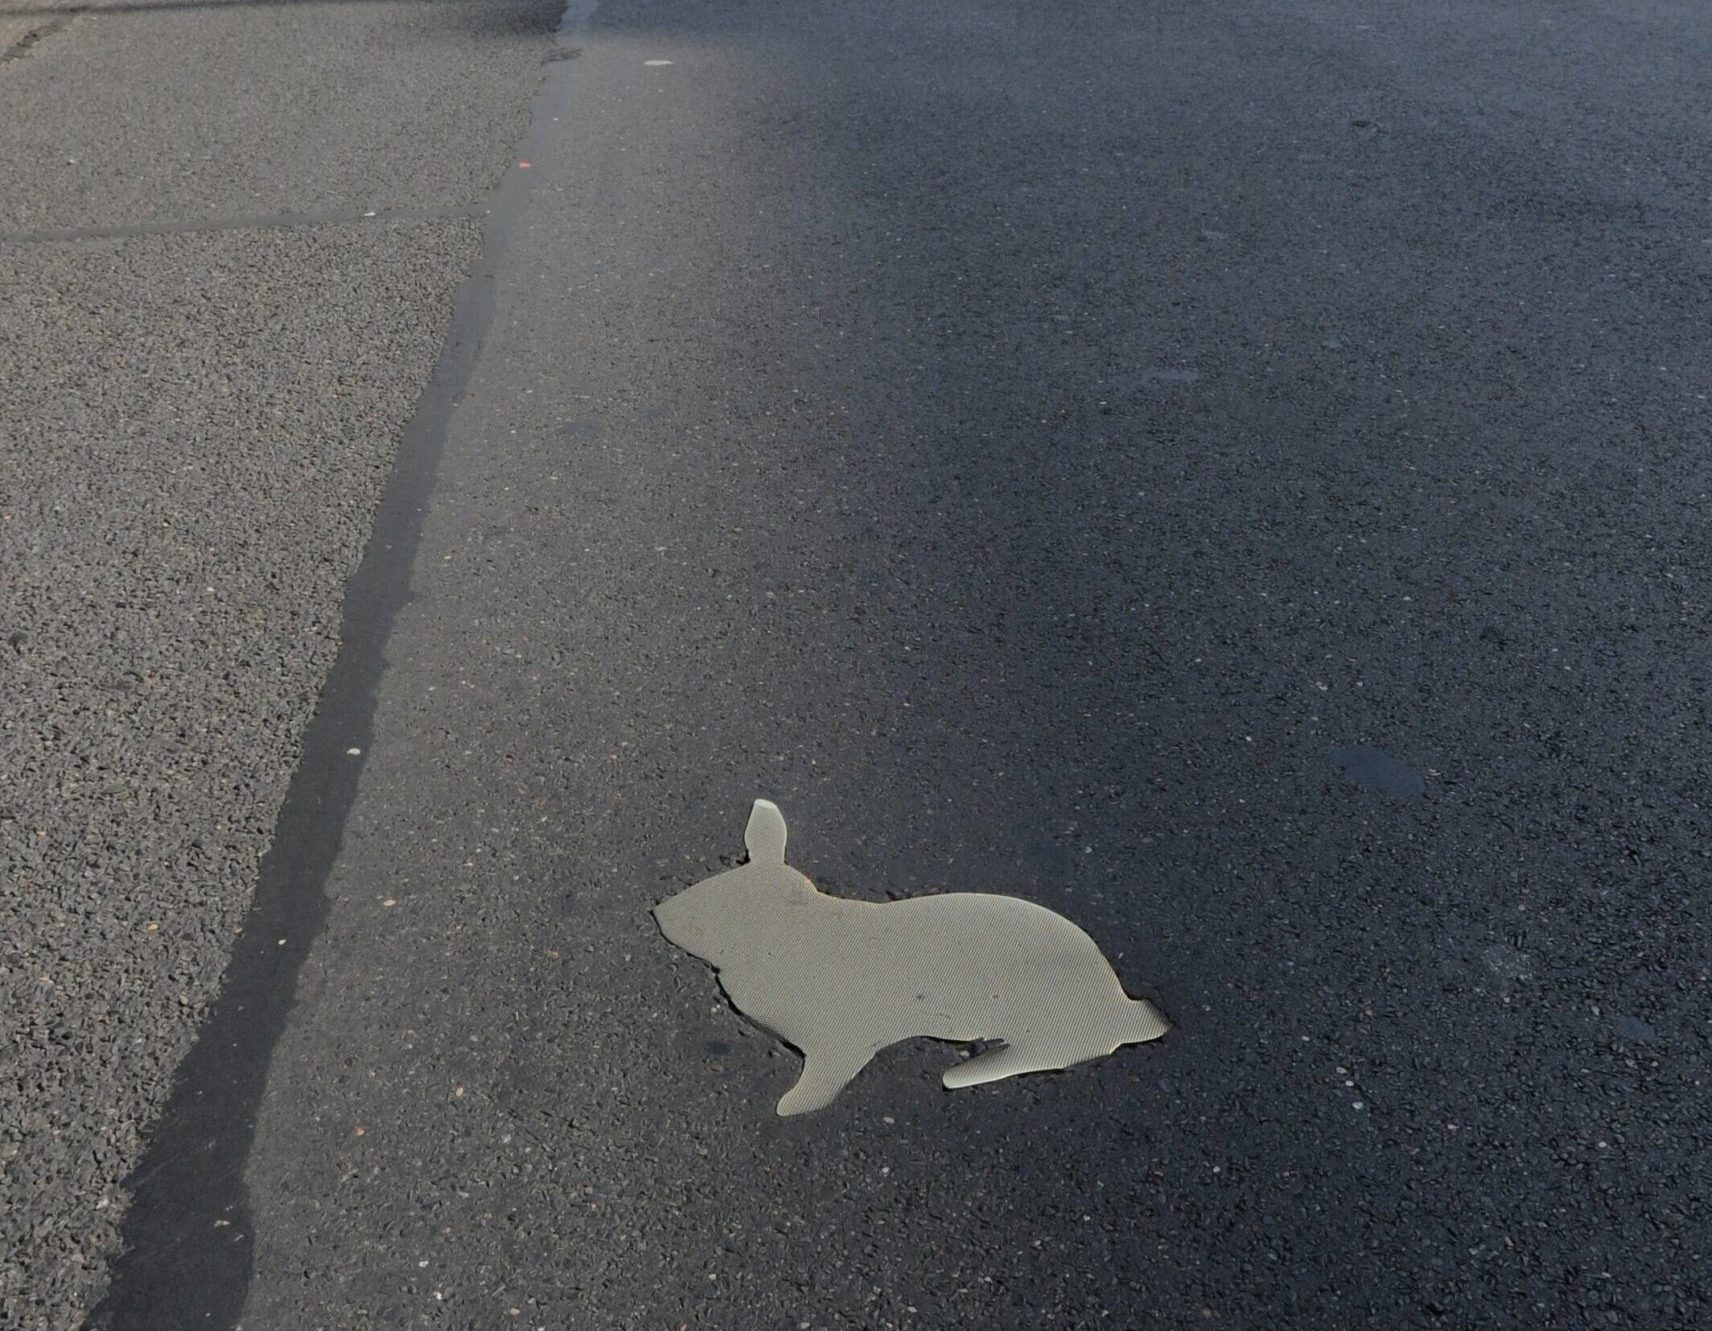 Obskure Orte in Berlin: Die Kaninchenfelder sollen an die Kaninchenpopulation auf dem Todesstreifen während der Zeit der Berliner Teilung erinnern. Foto: Imago/Joachim Schulz